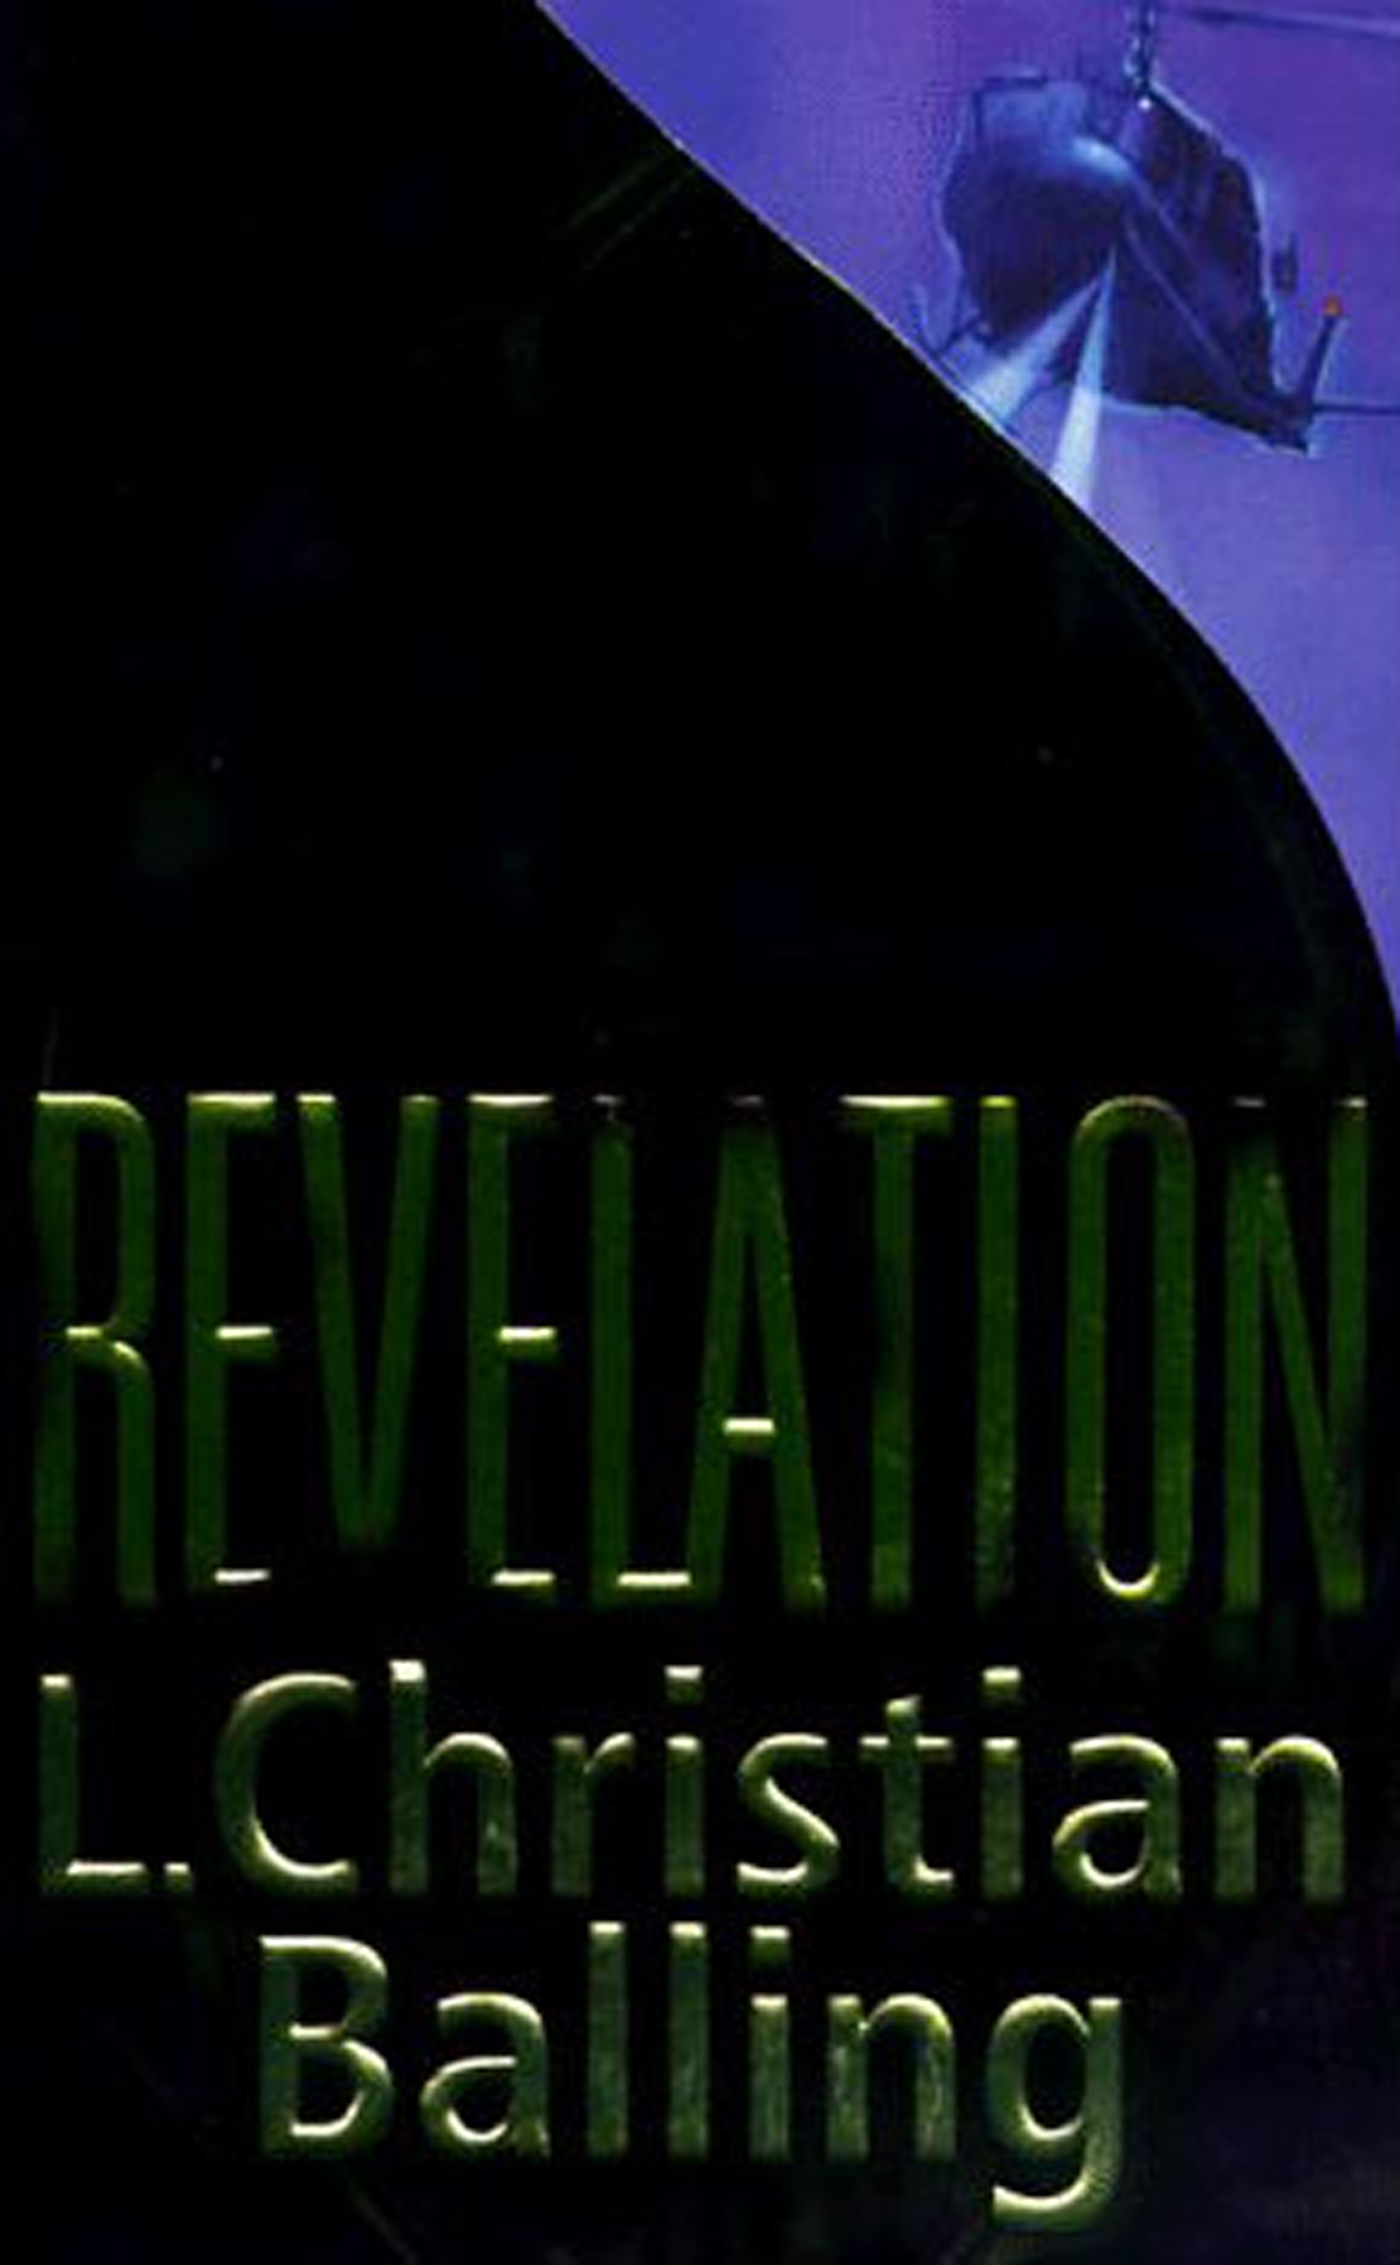 Revelation by L. Christian Balling